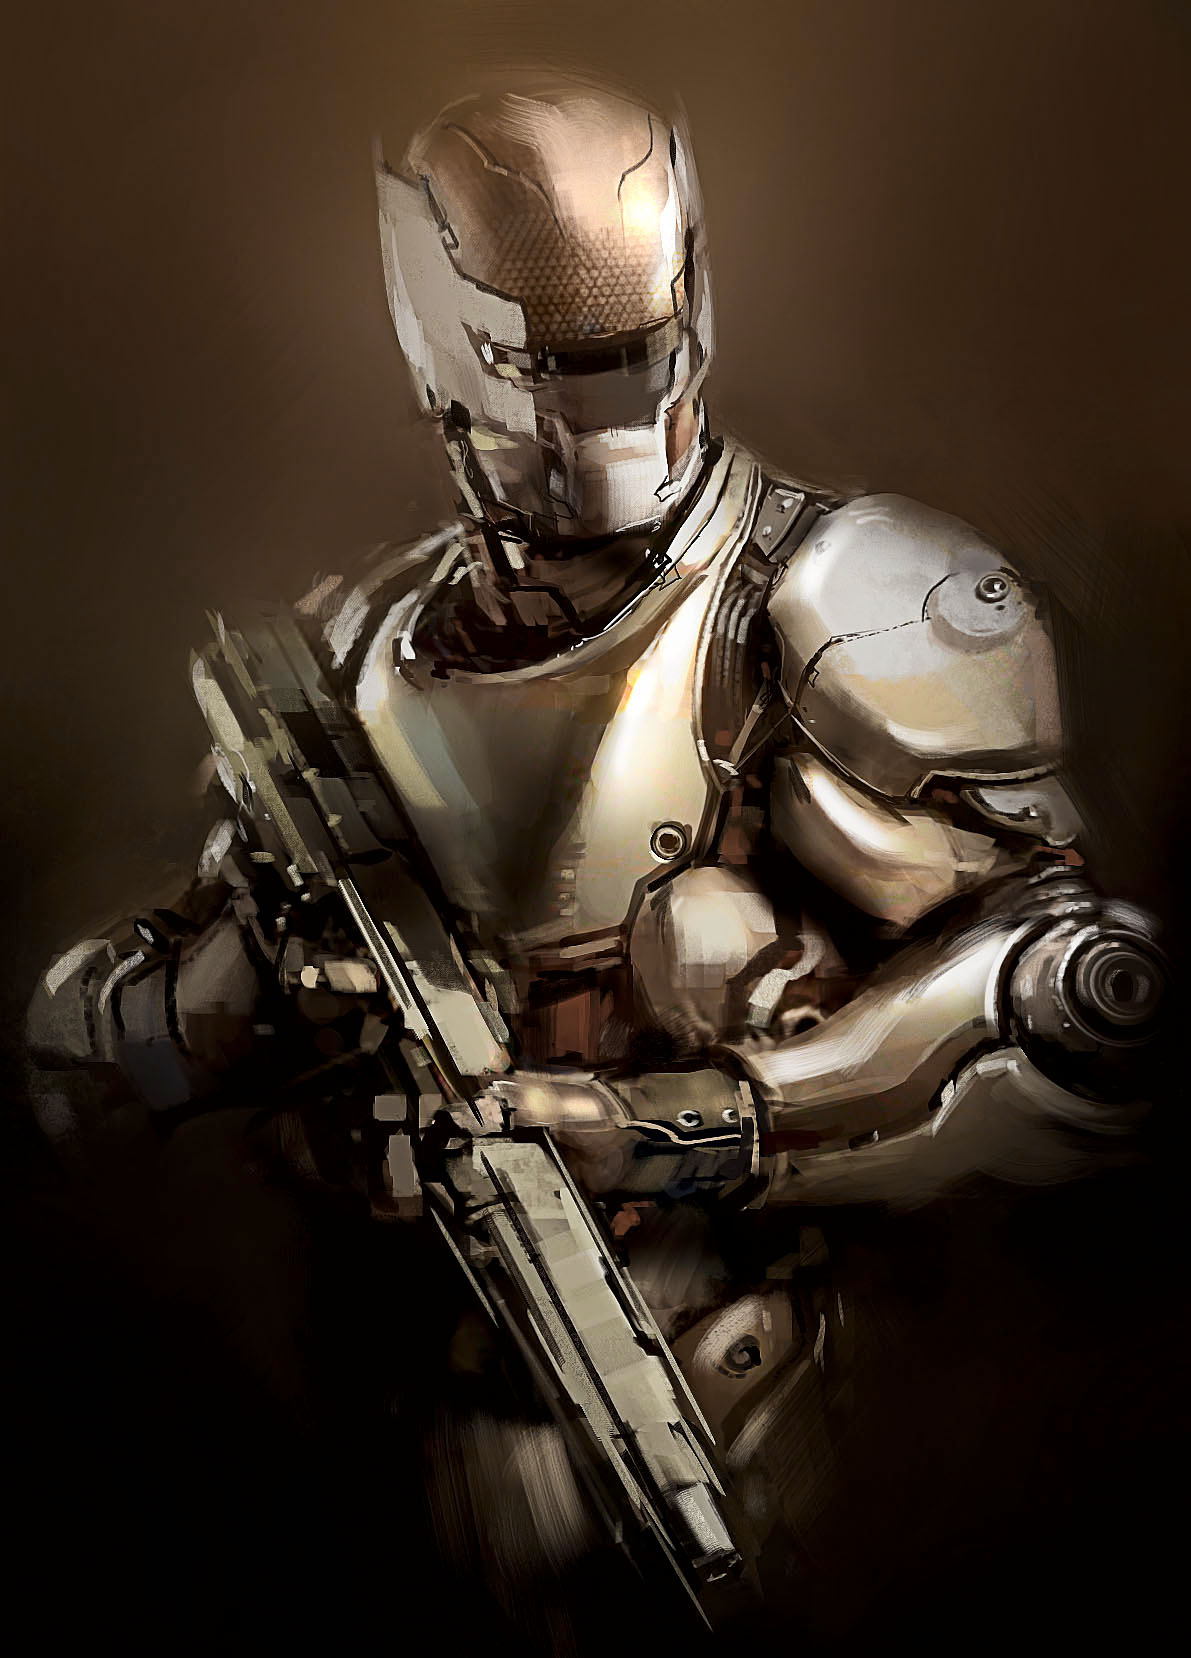 人形装甲,未来战场上人类必不可少的防护武器